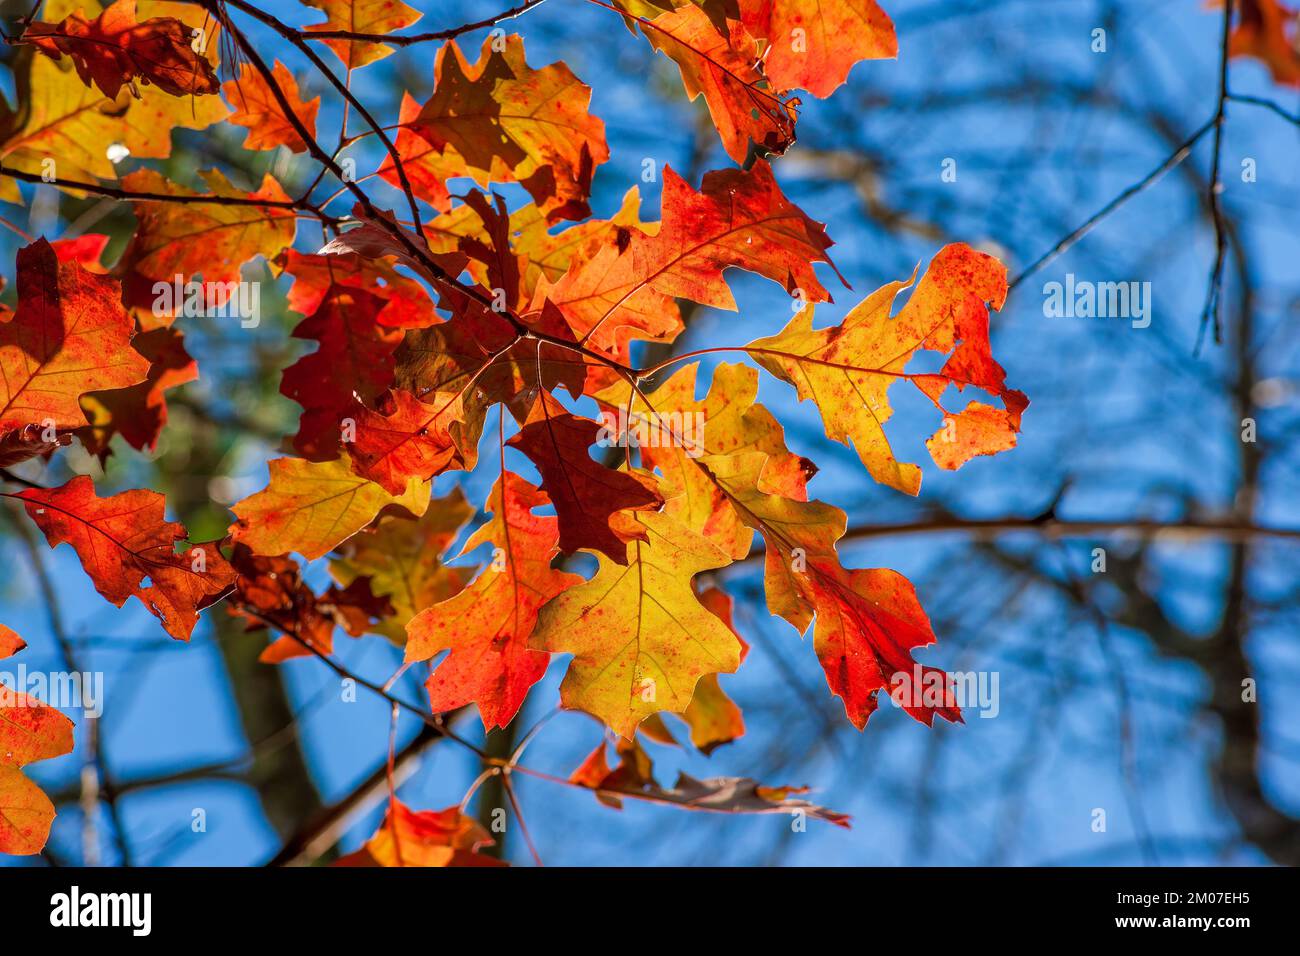 Ramita de roble blanco (Quercus alba) en follaje pico de otoño. Hojas en tonos de rojo, contra un cielo azul. Refugio Nacional de Vida Silvestre del Río Assabet, Sudbury, MA Foto de stock